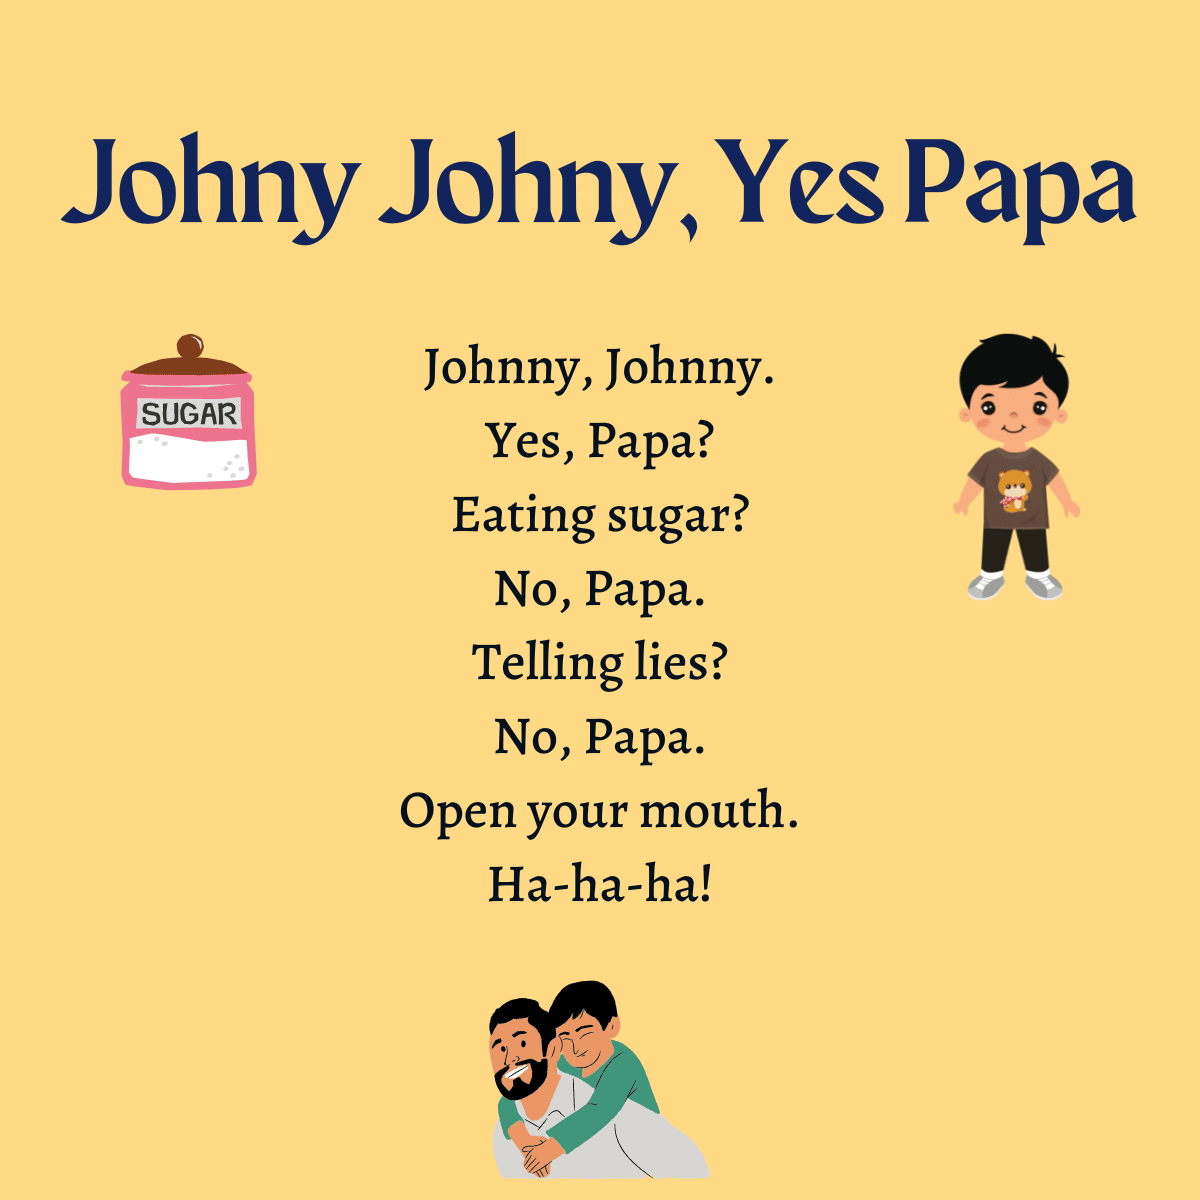 Johny Johny, Yes Papa lyrics